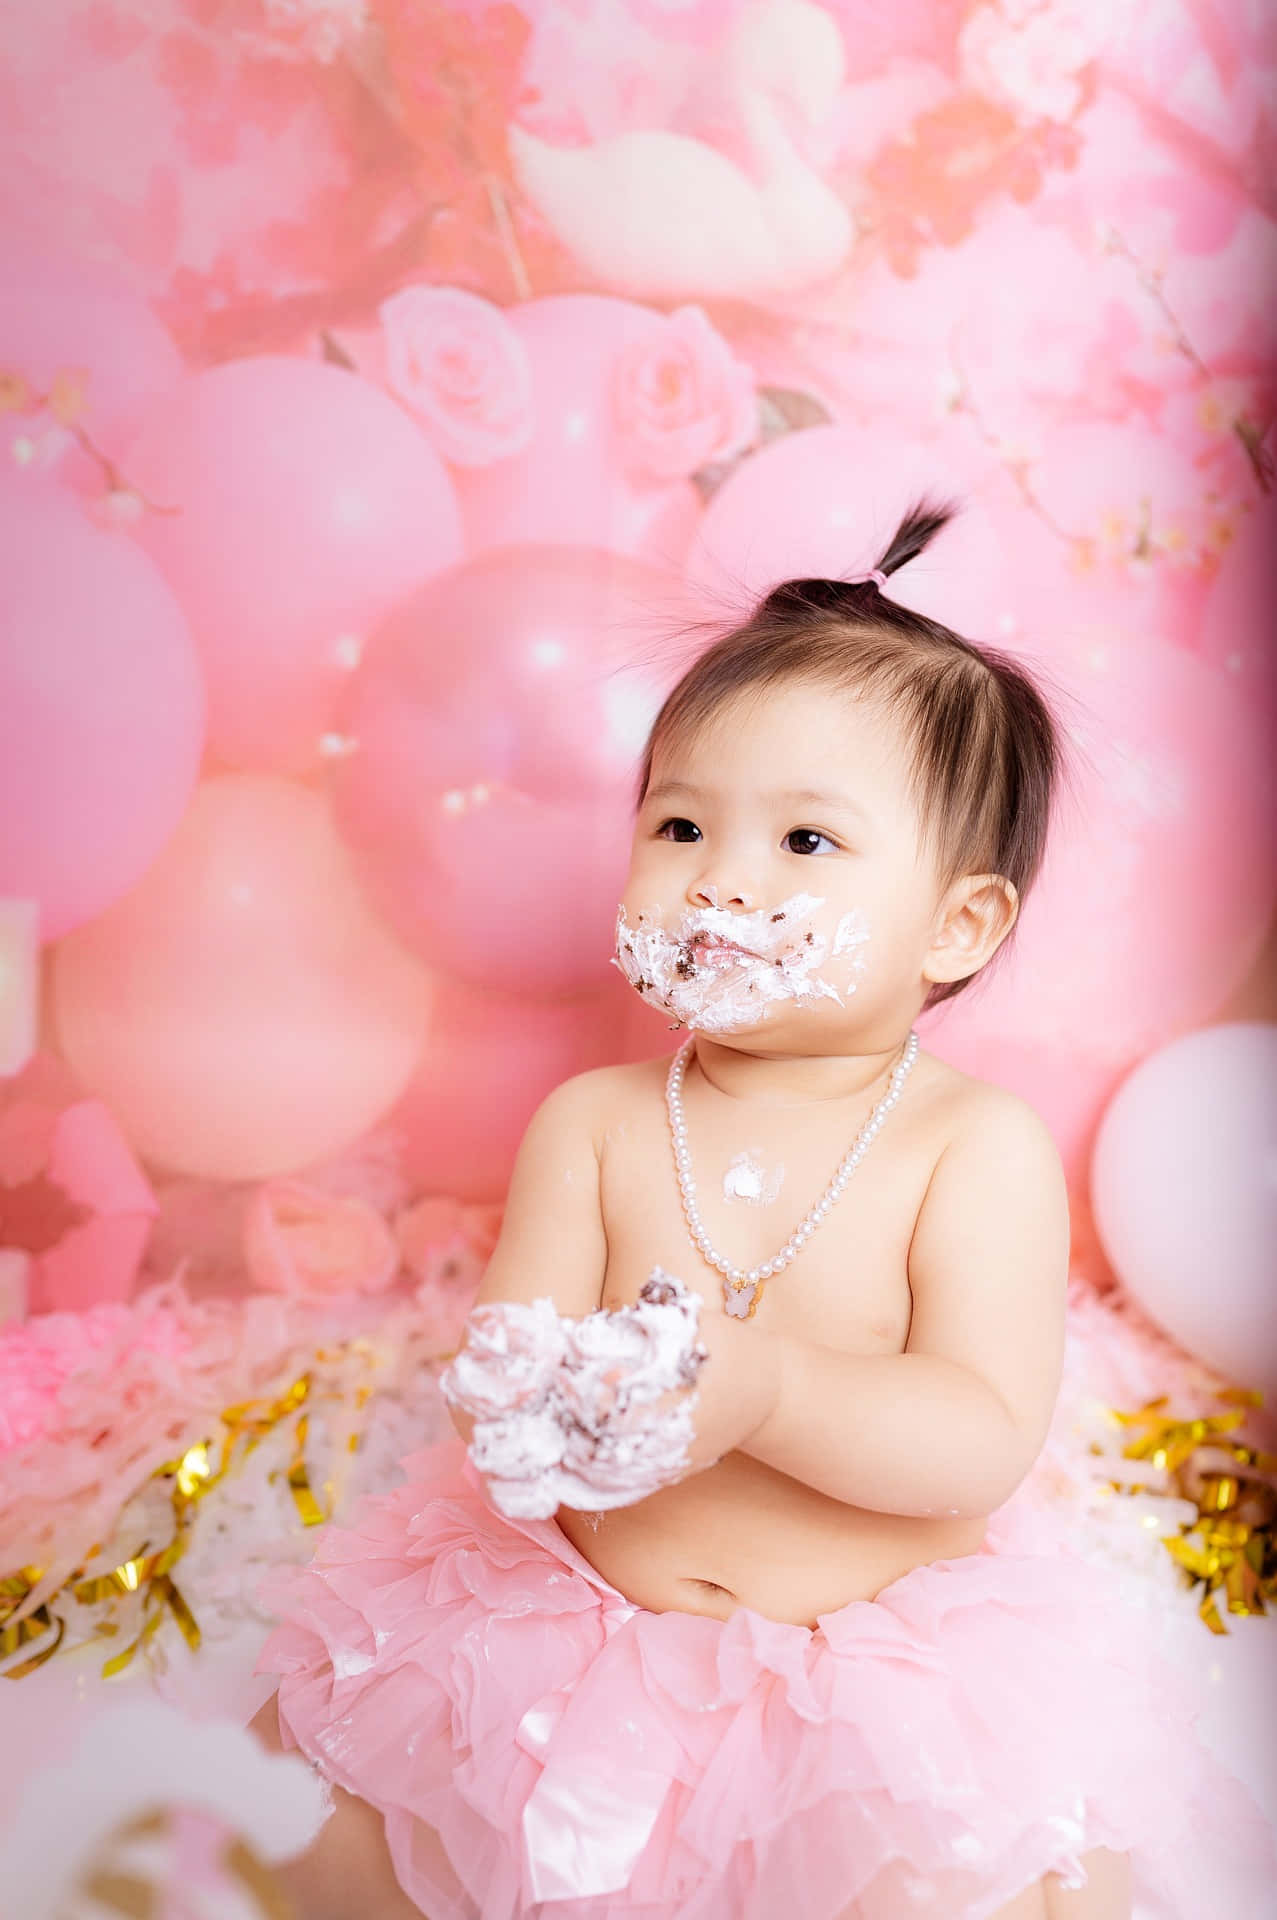 Imagende Pastel De Bebé Rosa Para Celebrar Su Primer Cumpleaños